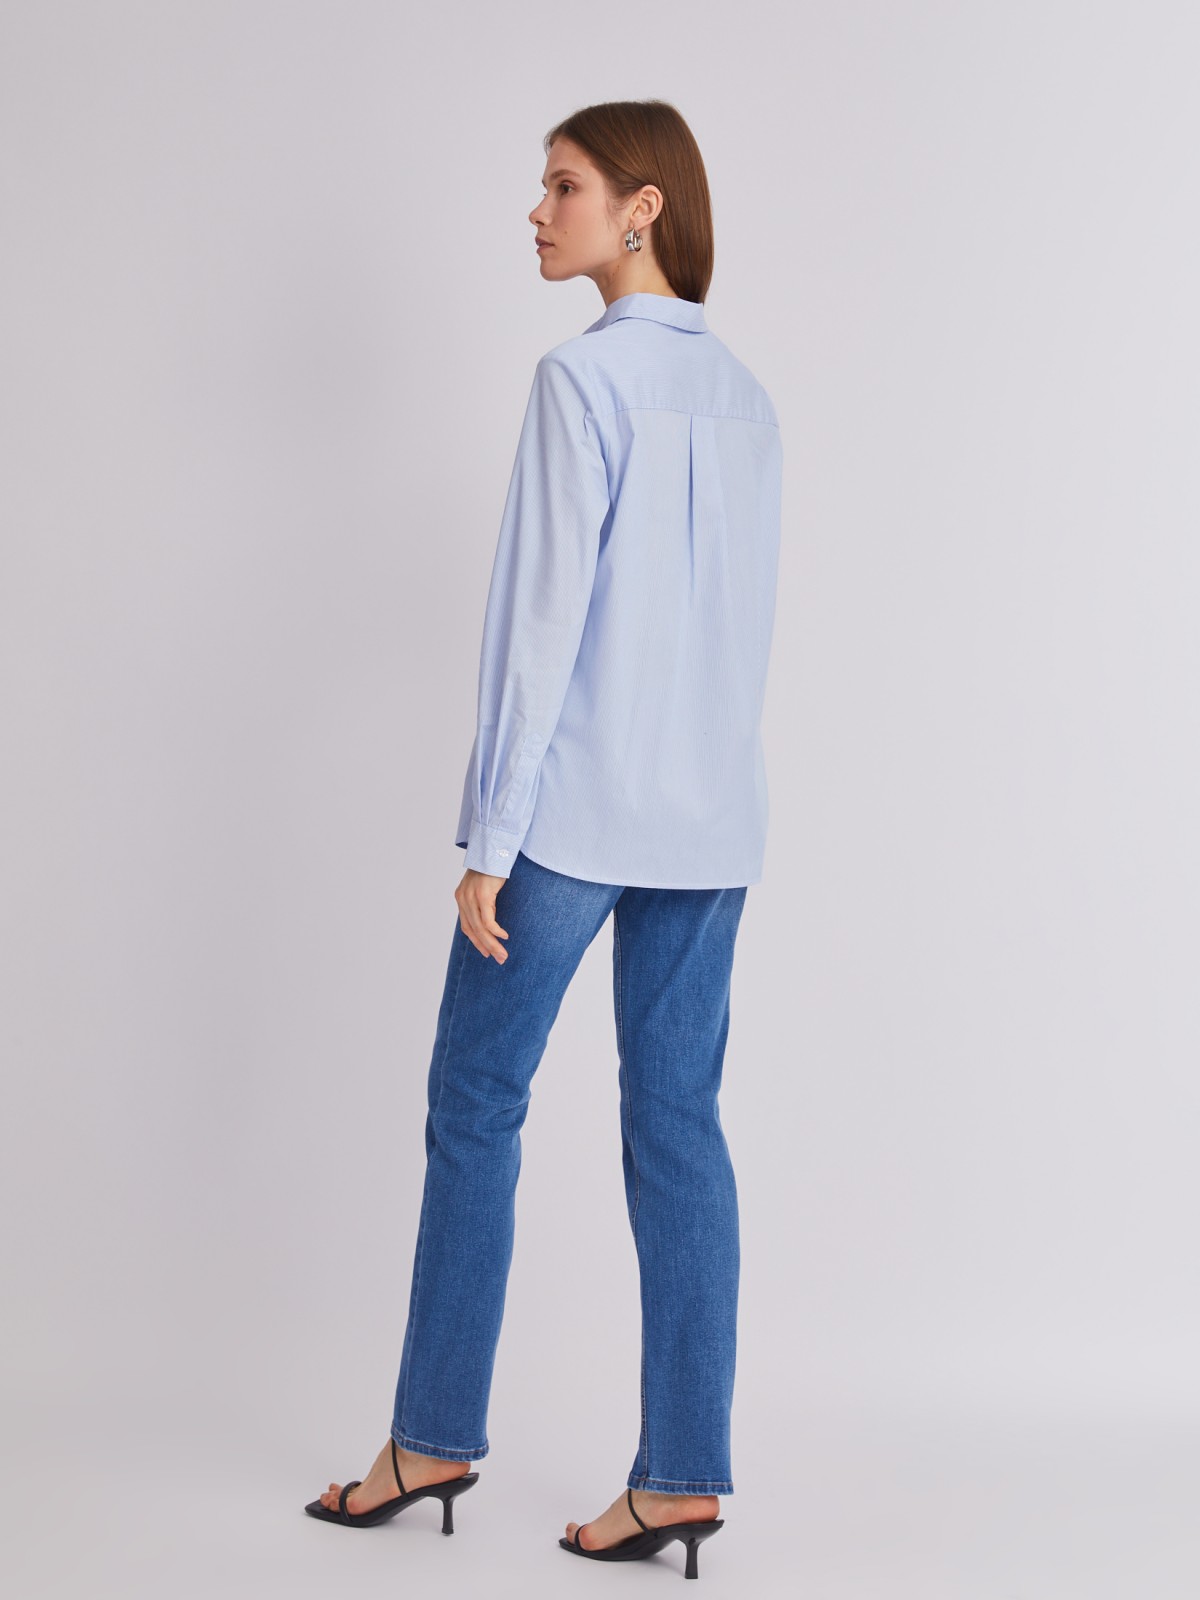 Офисная рубашка прямого силуэта с акцентом на кармане zolla 223311159242, цвет светло-голубой, размер M - фото 6